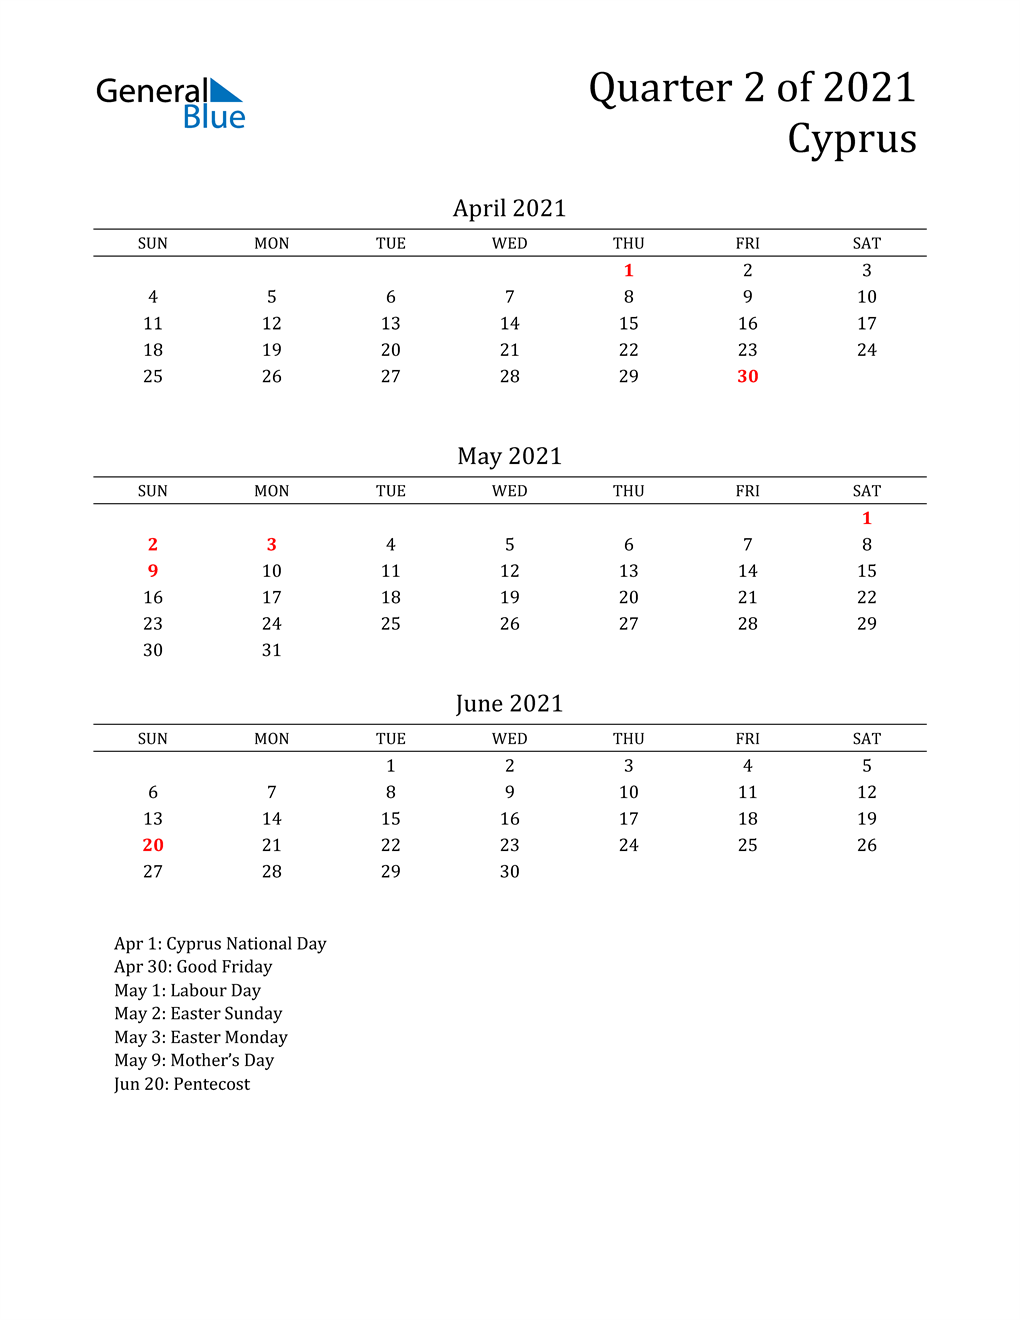  2021 Cyprus Quarterly Calendar